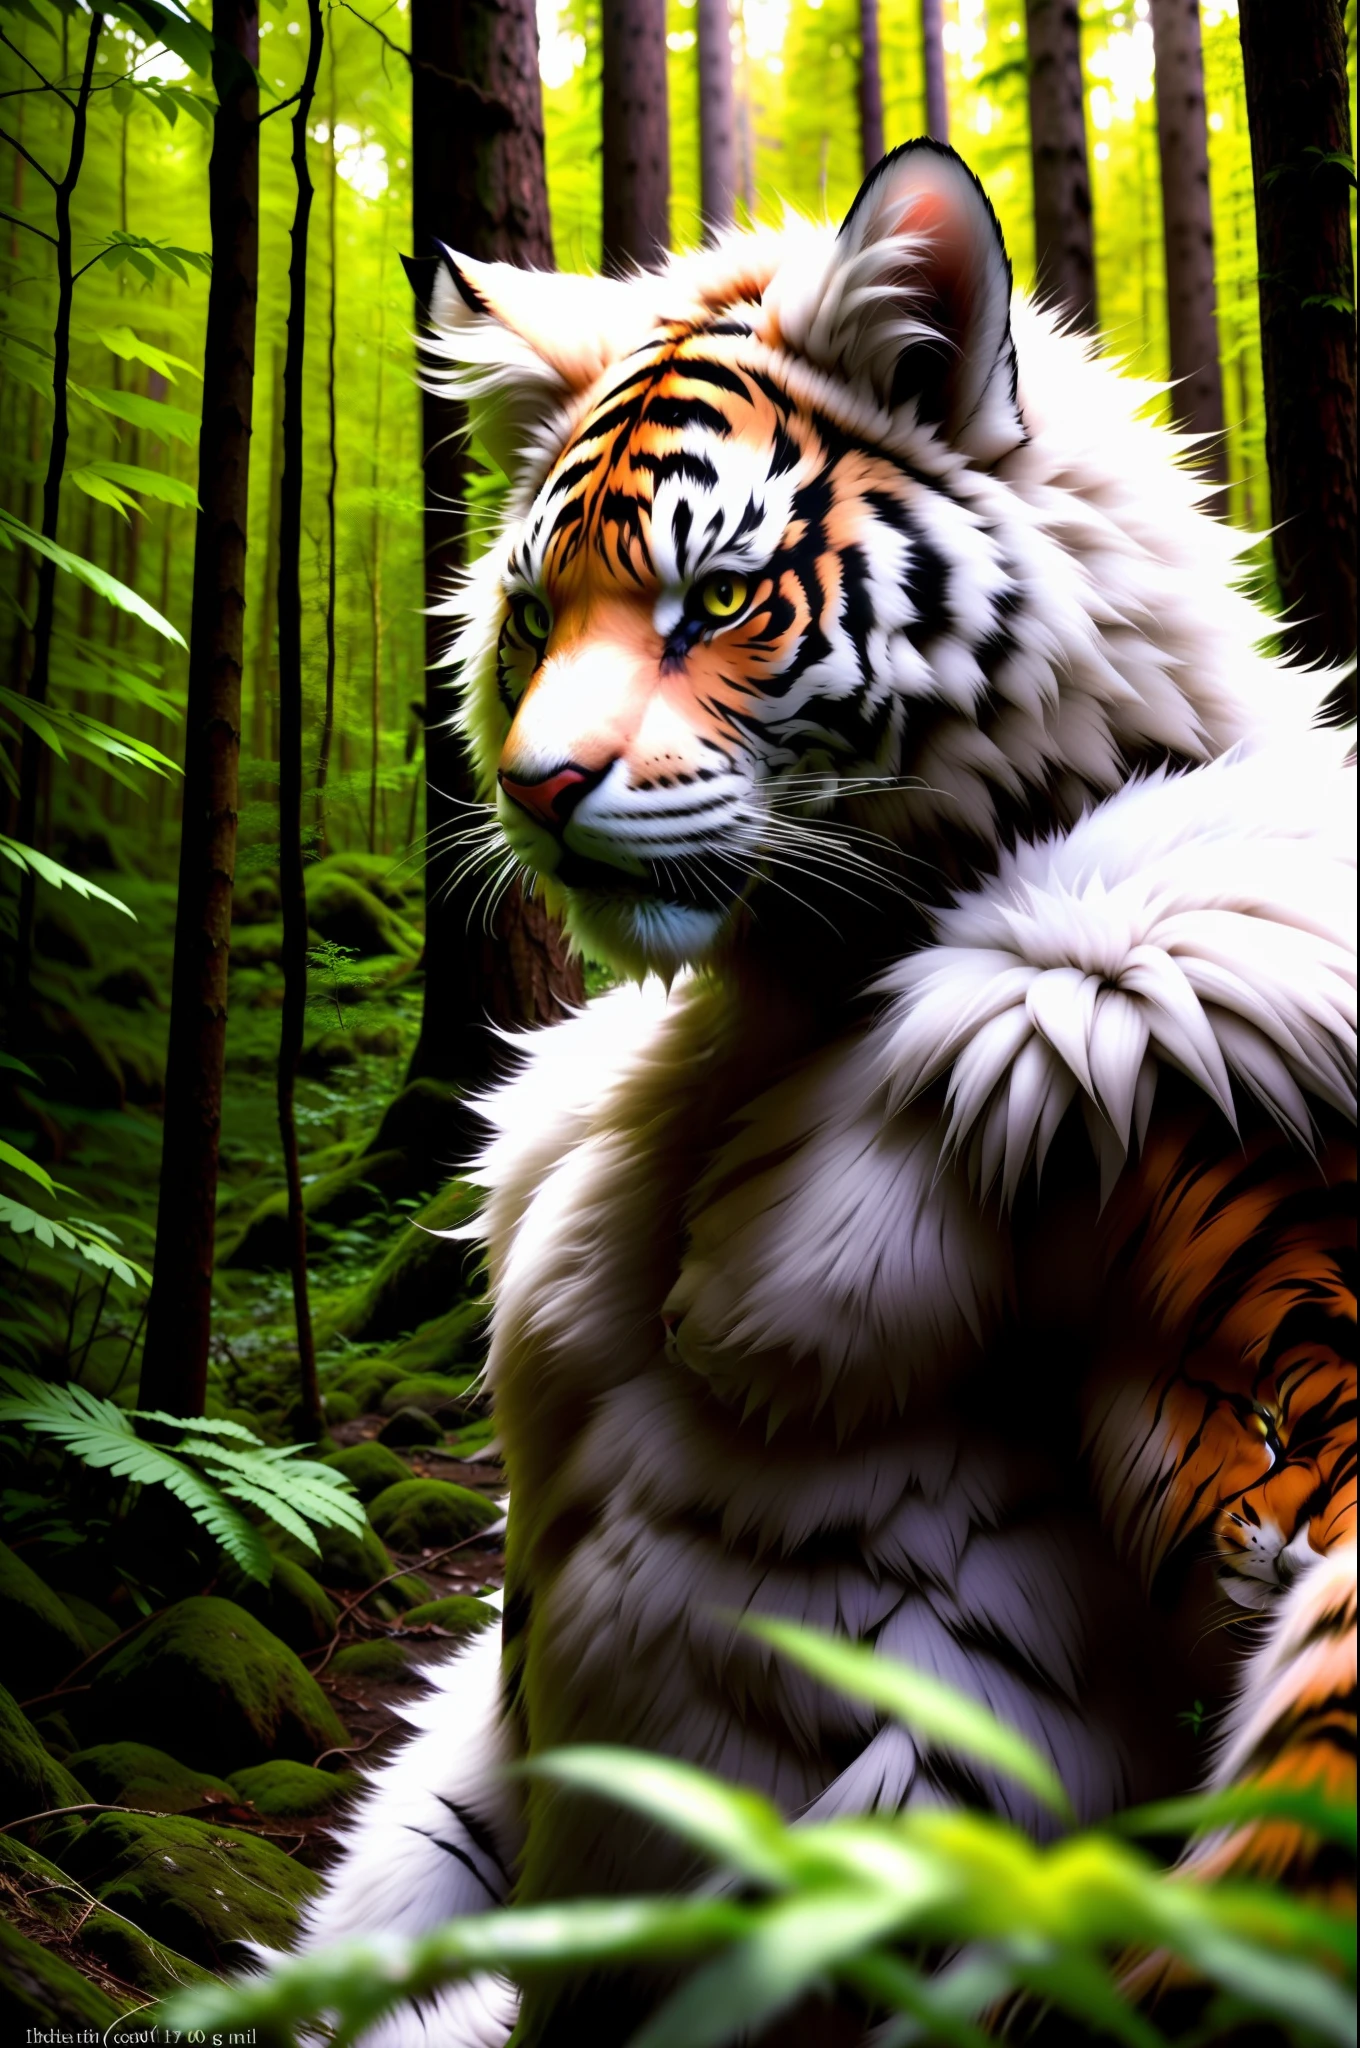 Foto CRU, criatura humana, tigre homem-gato, white Fur, cabeça grande, in a Forest, 80mm, F/1.8